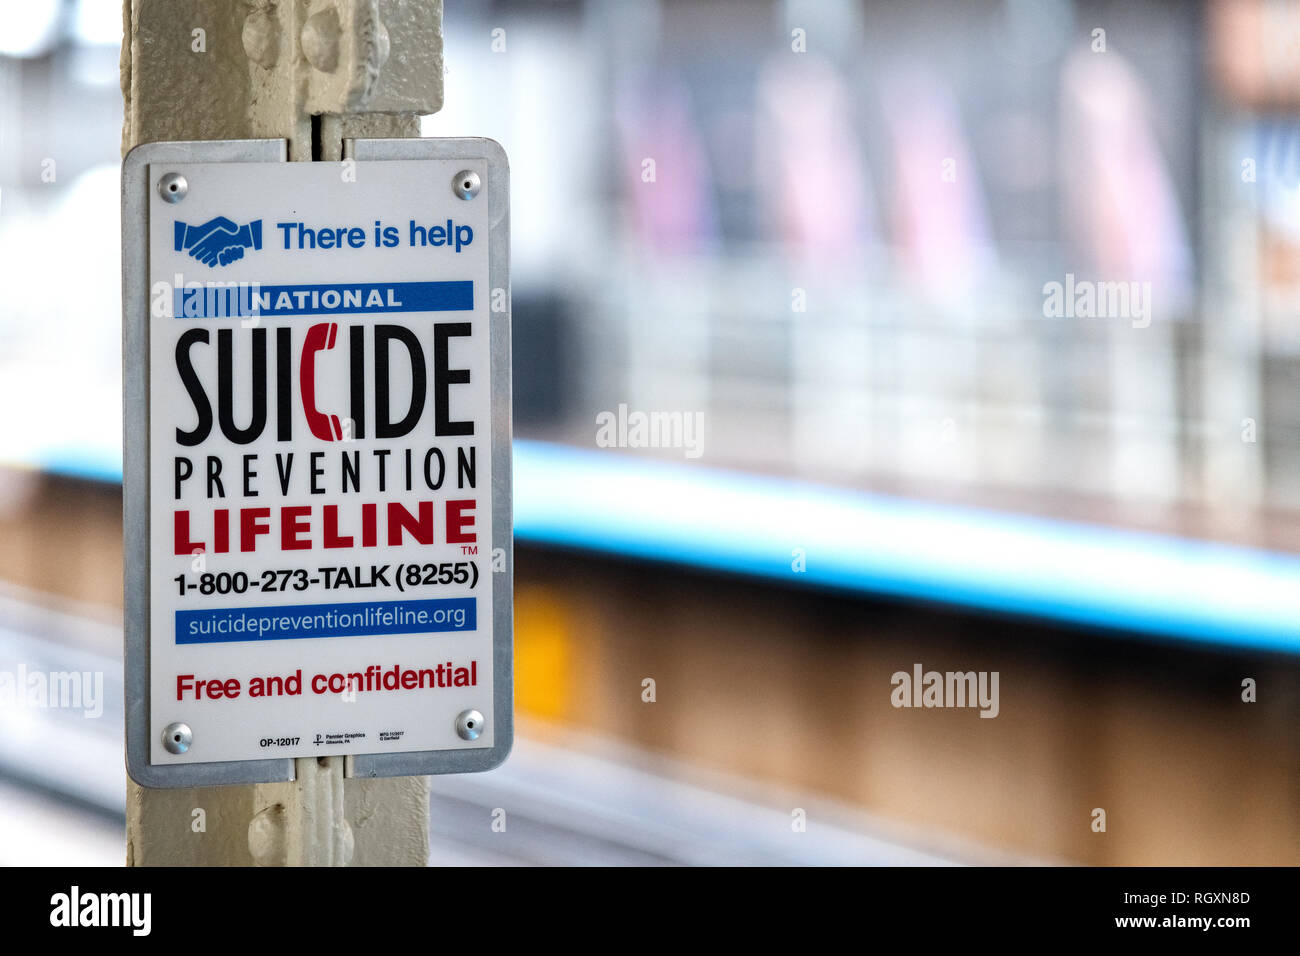 Chicago, Illinois, USA : 10 Octobre 2018 : Journée mondiale de prévention du suicide - PRÉVENTION DU SUICIDE dans le métro. Concept de soins de santé mentale. Ima - Banque D'Images